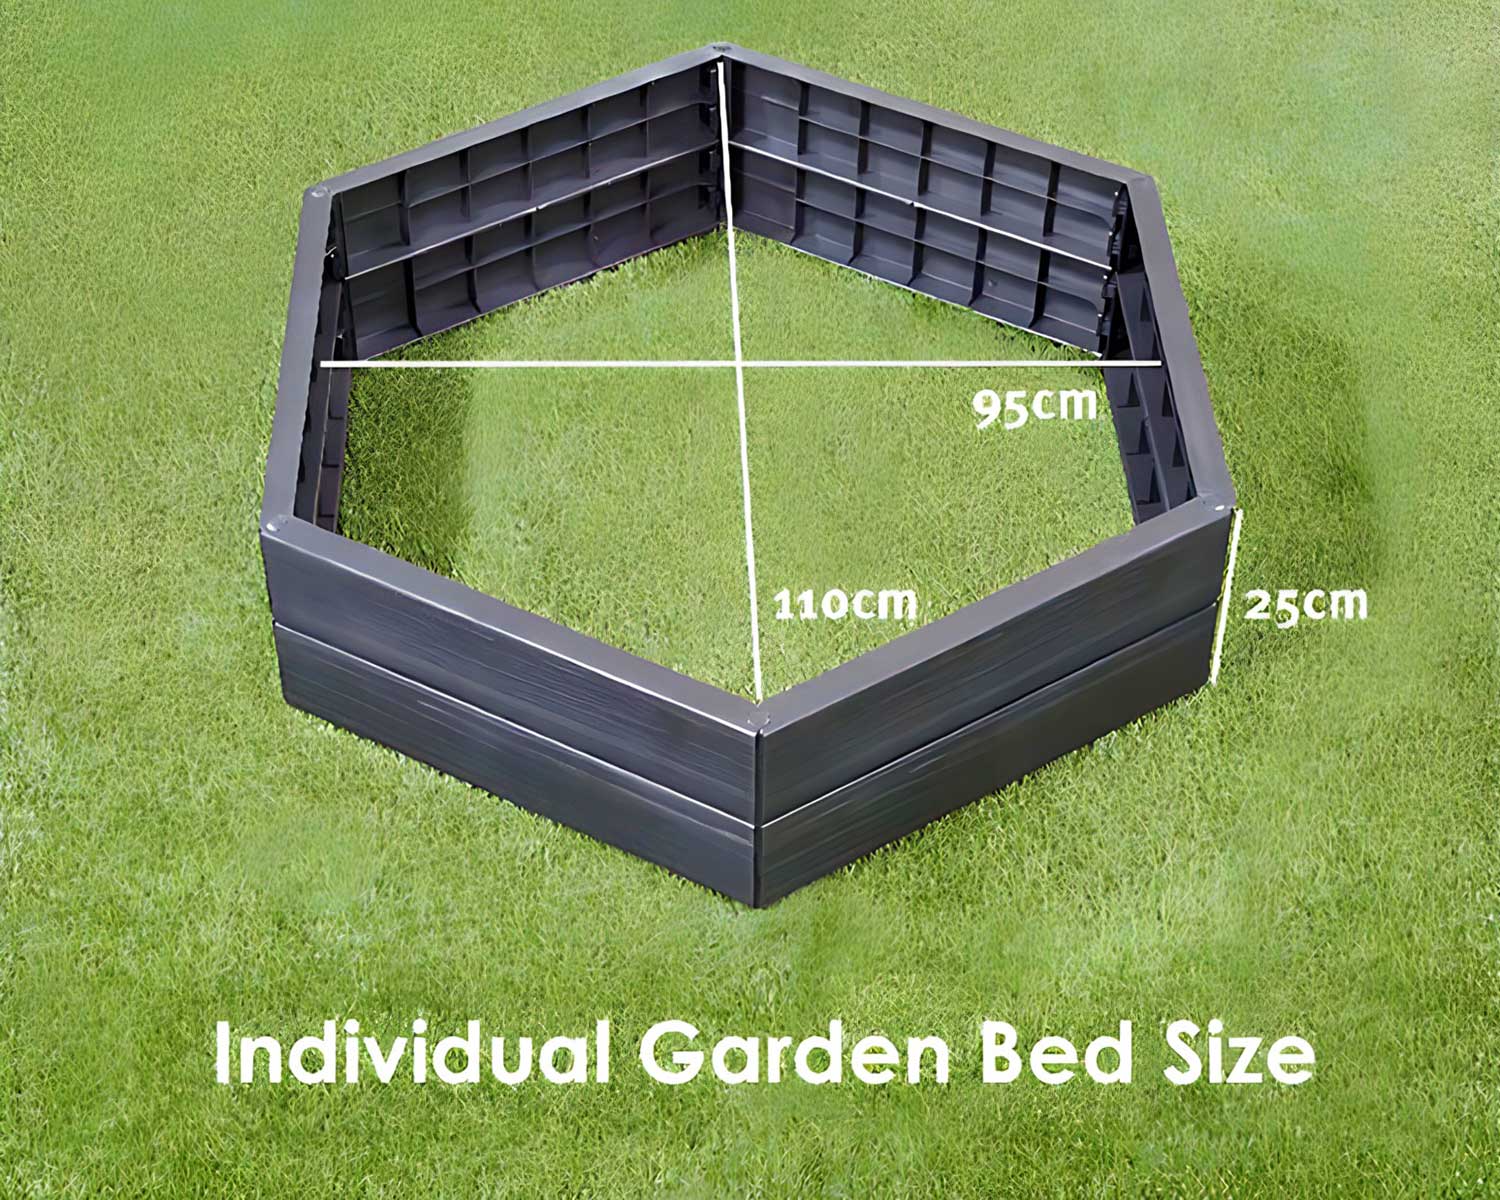 Ergo Hexagonal Raised Bed - dimensions